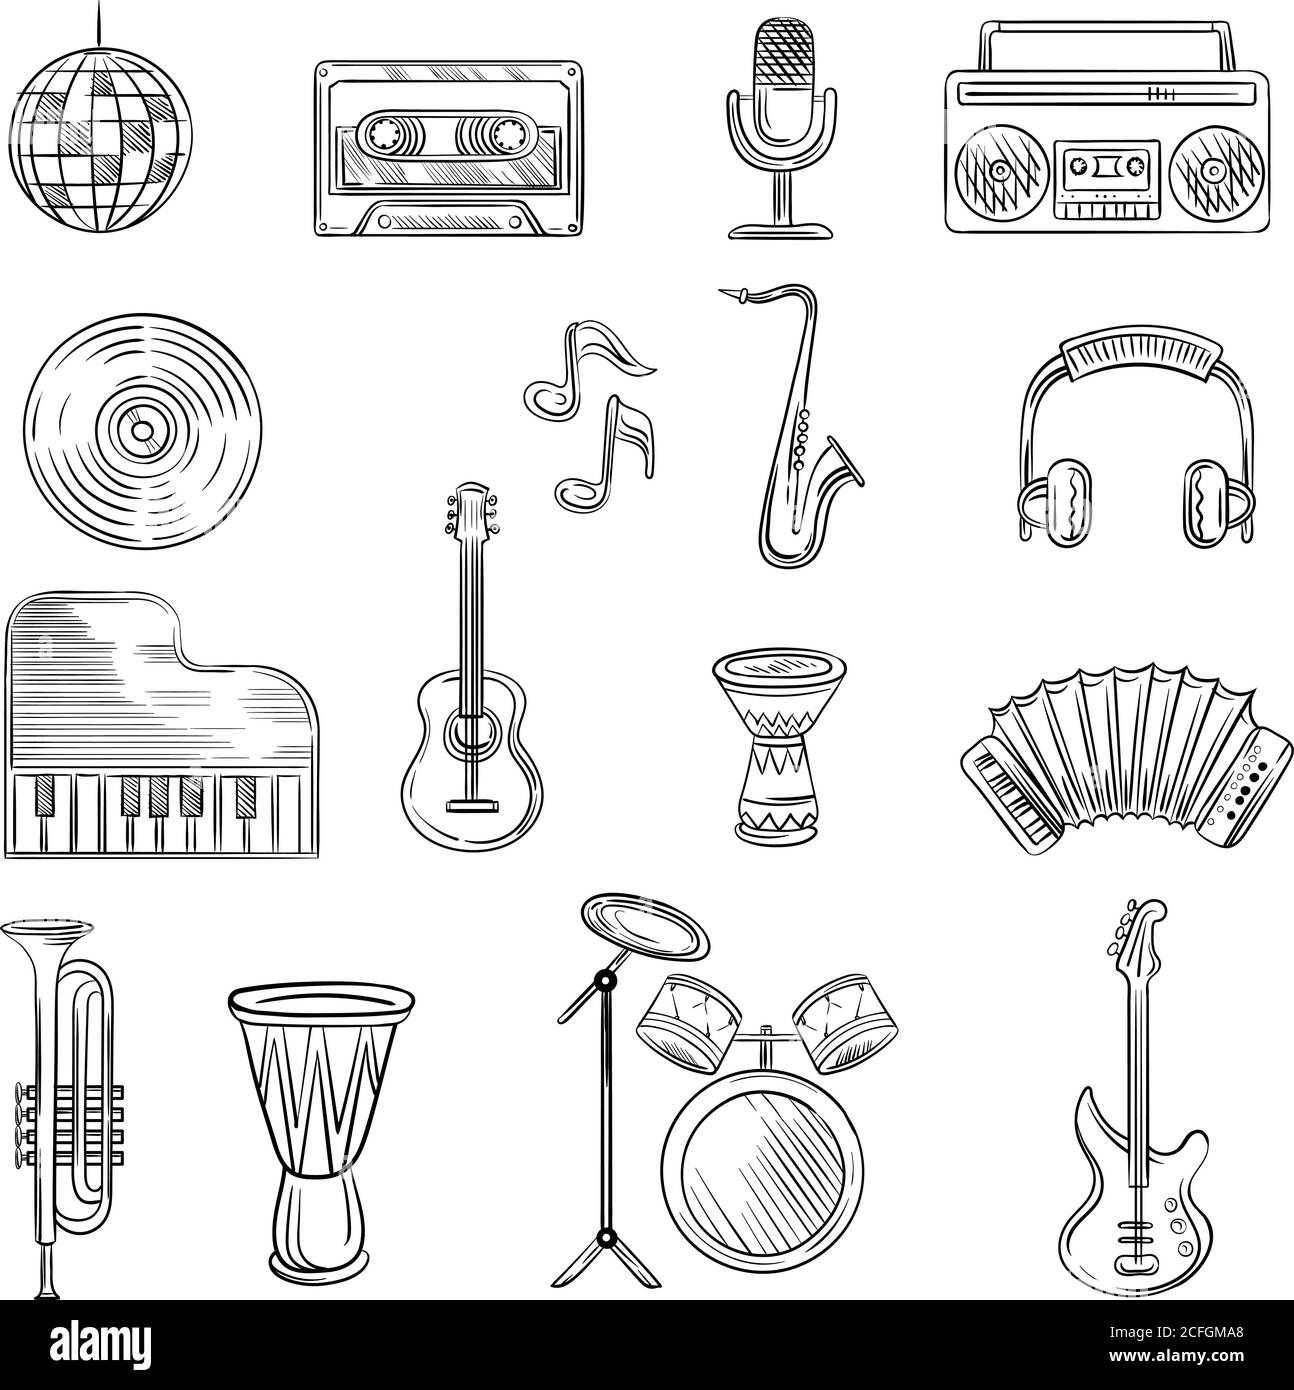 Symbole für Musikelemente eingestellt. Handgezeichnete Skizze mit Noten, Instrumenten, Gitarre, Kopfhörer, Schlagzeug, Musikspieler Stock Vektor